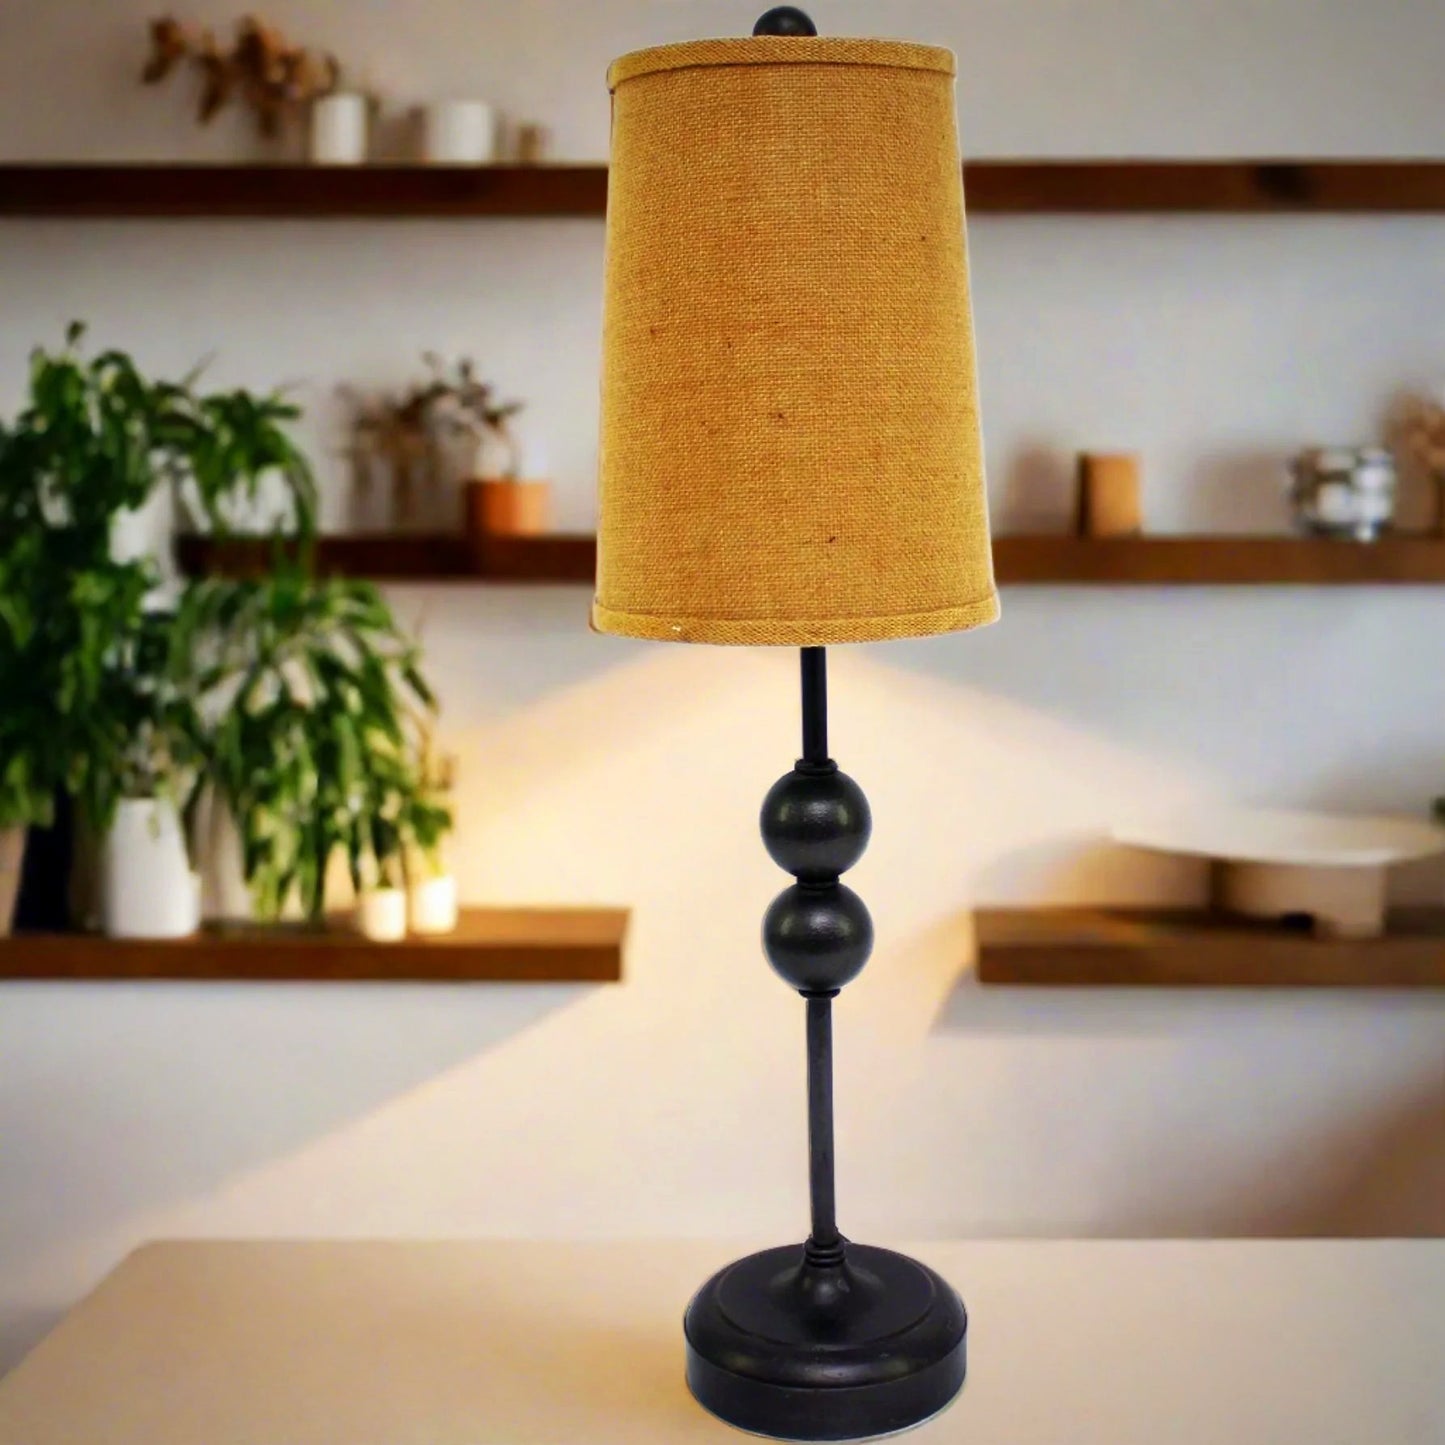 Miny Lamp